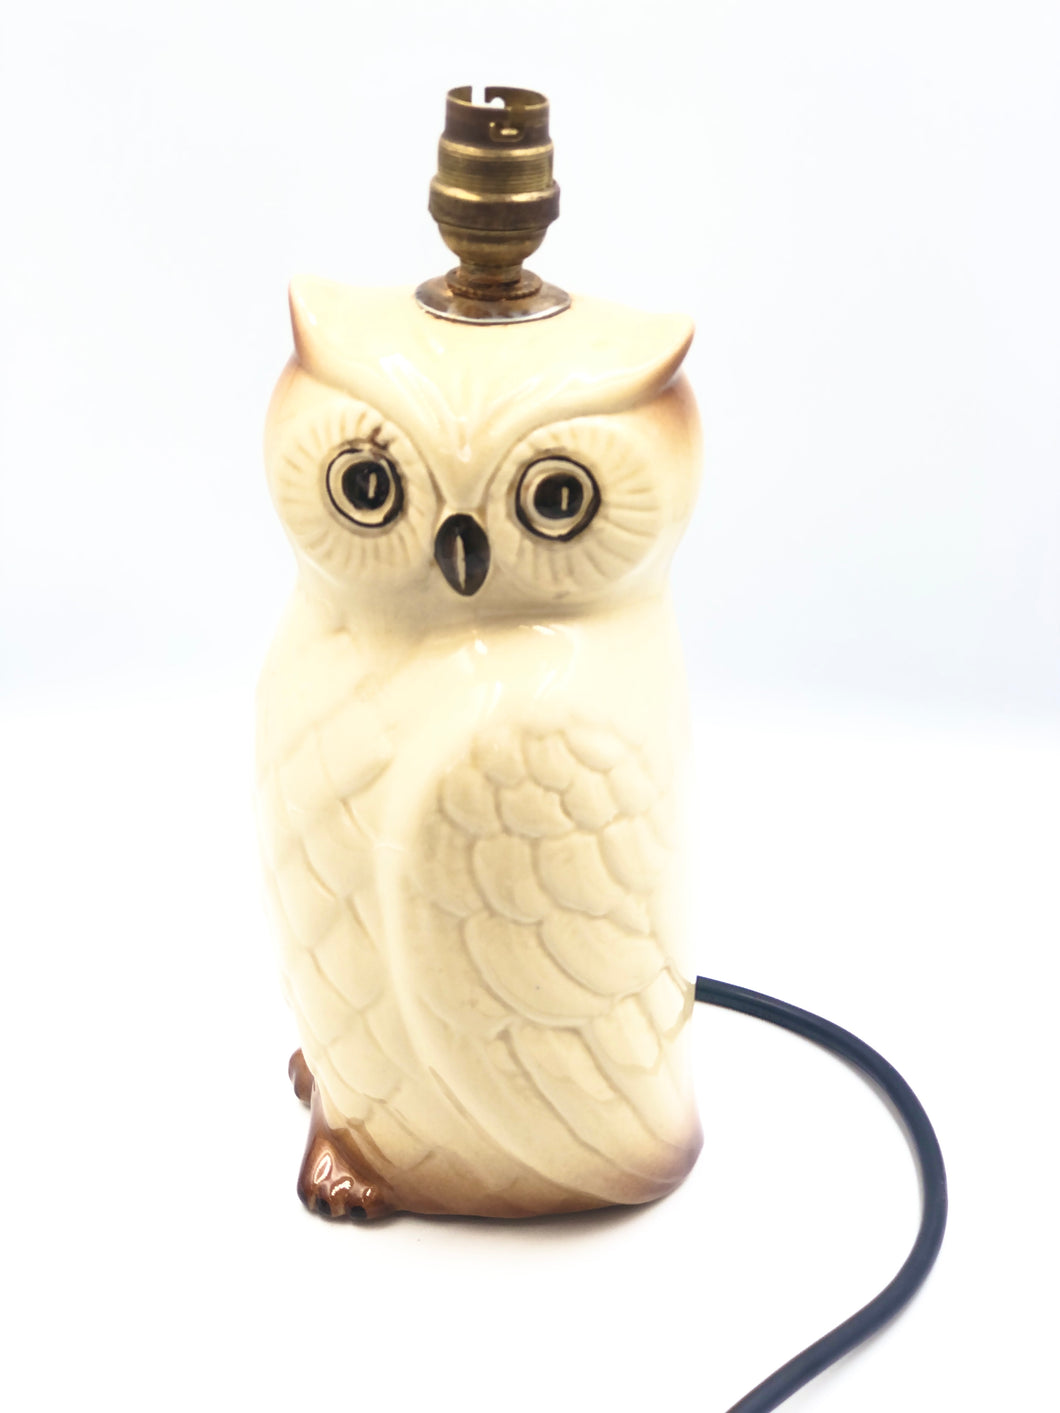 Retro Owl Lamp